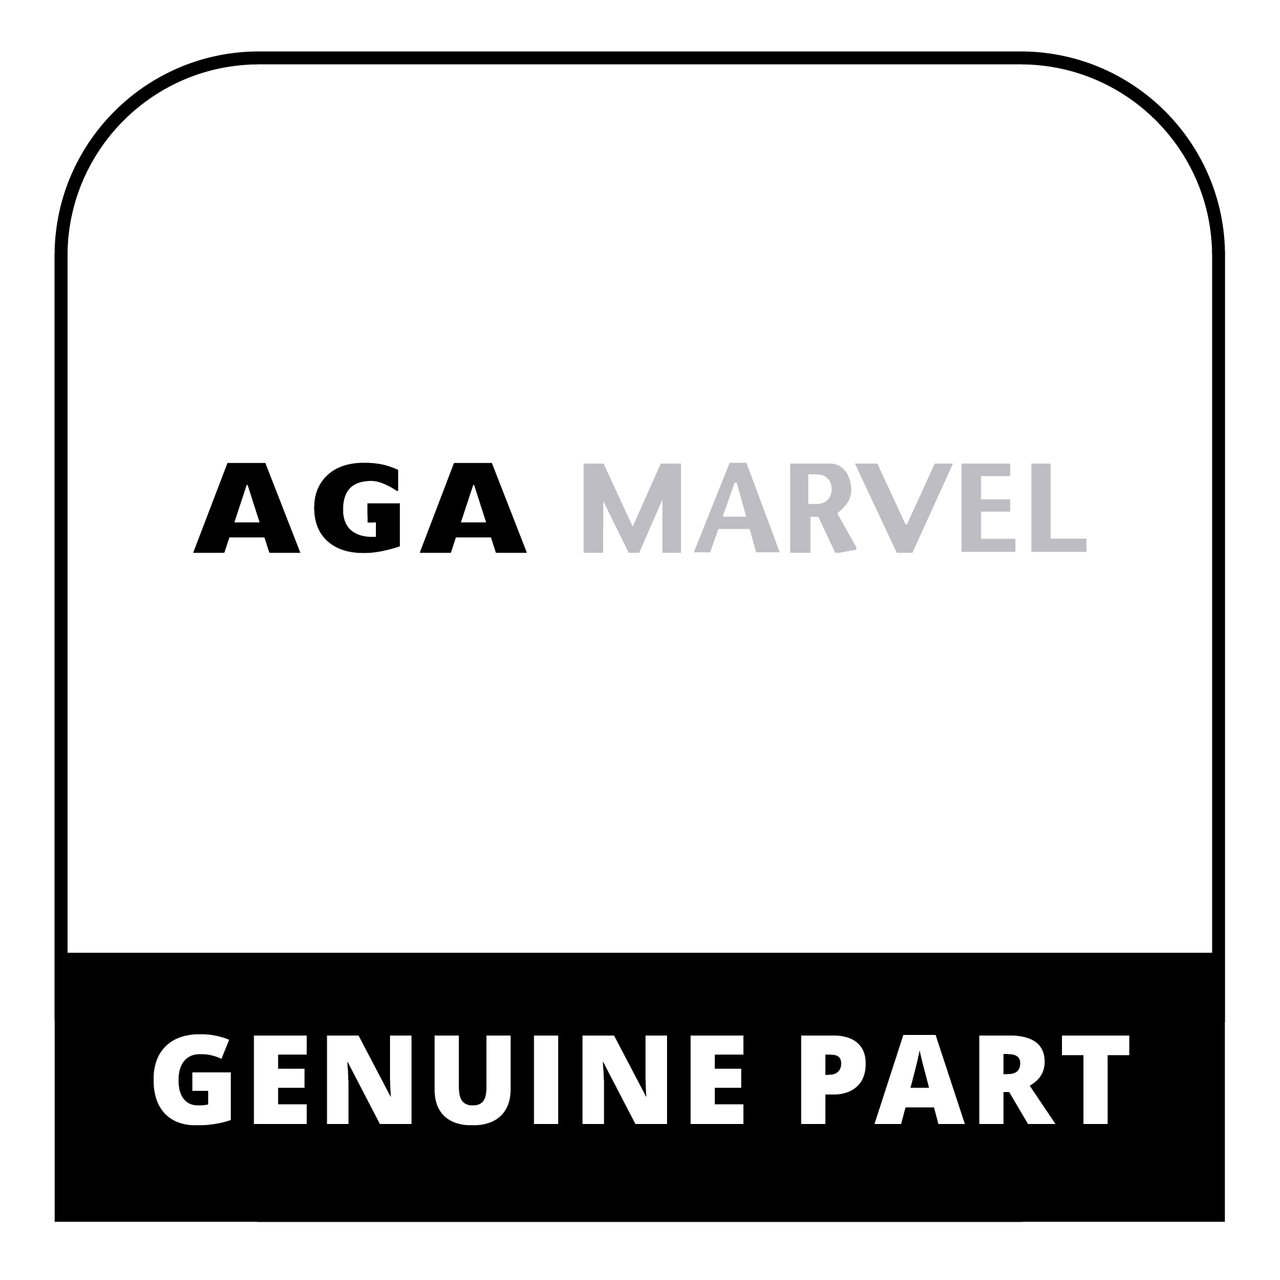 AGA Marvel S41013203-012 - Shelf Glass - Genuine AGA Marvel Part